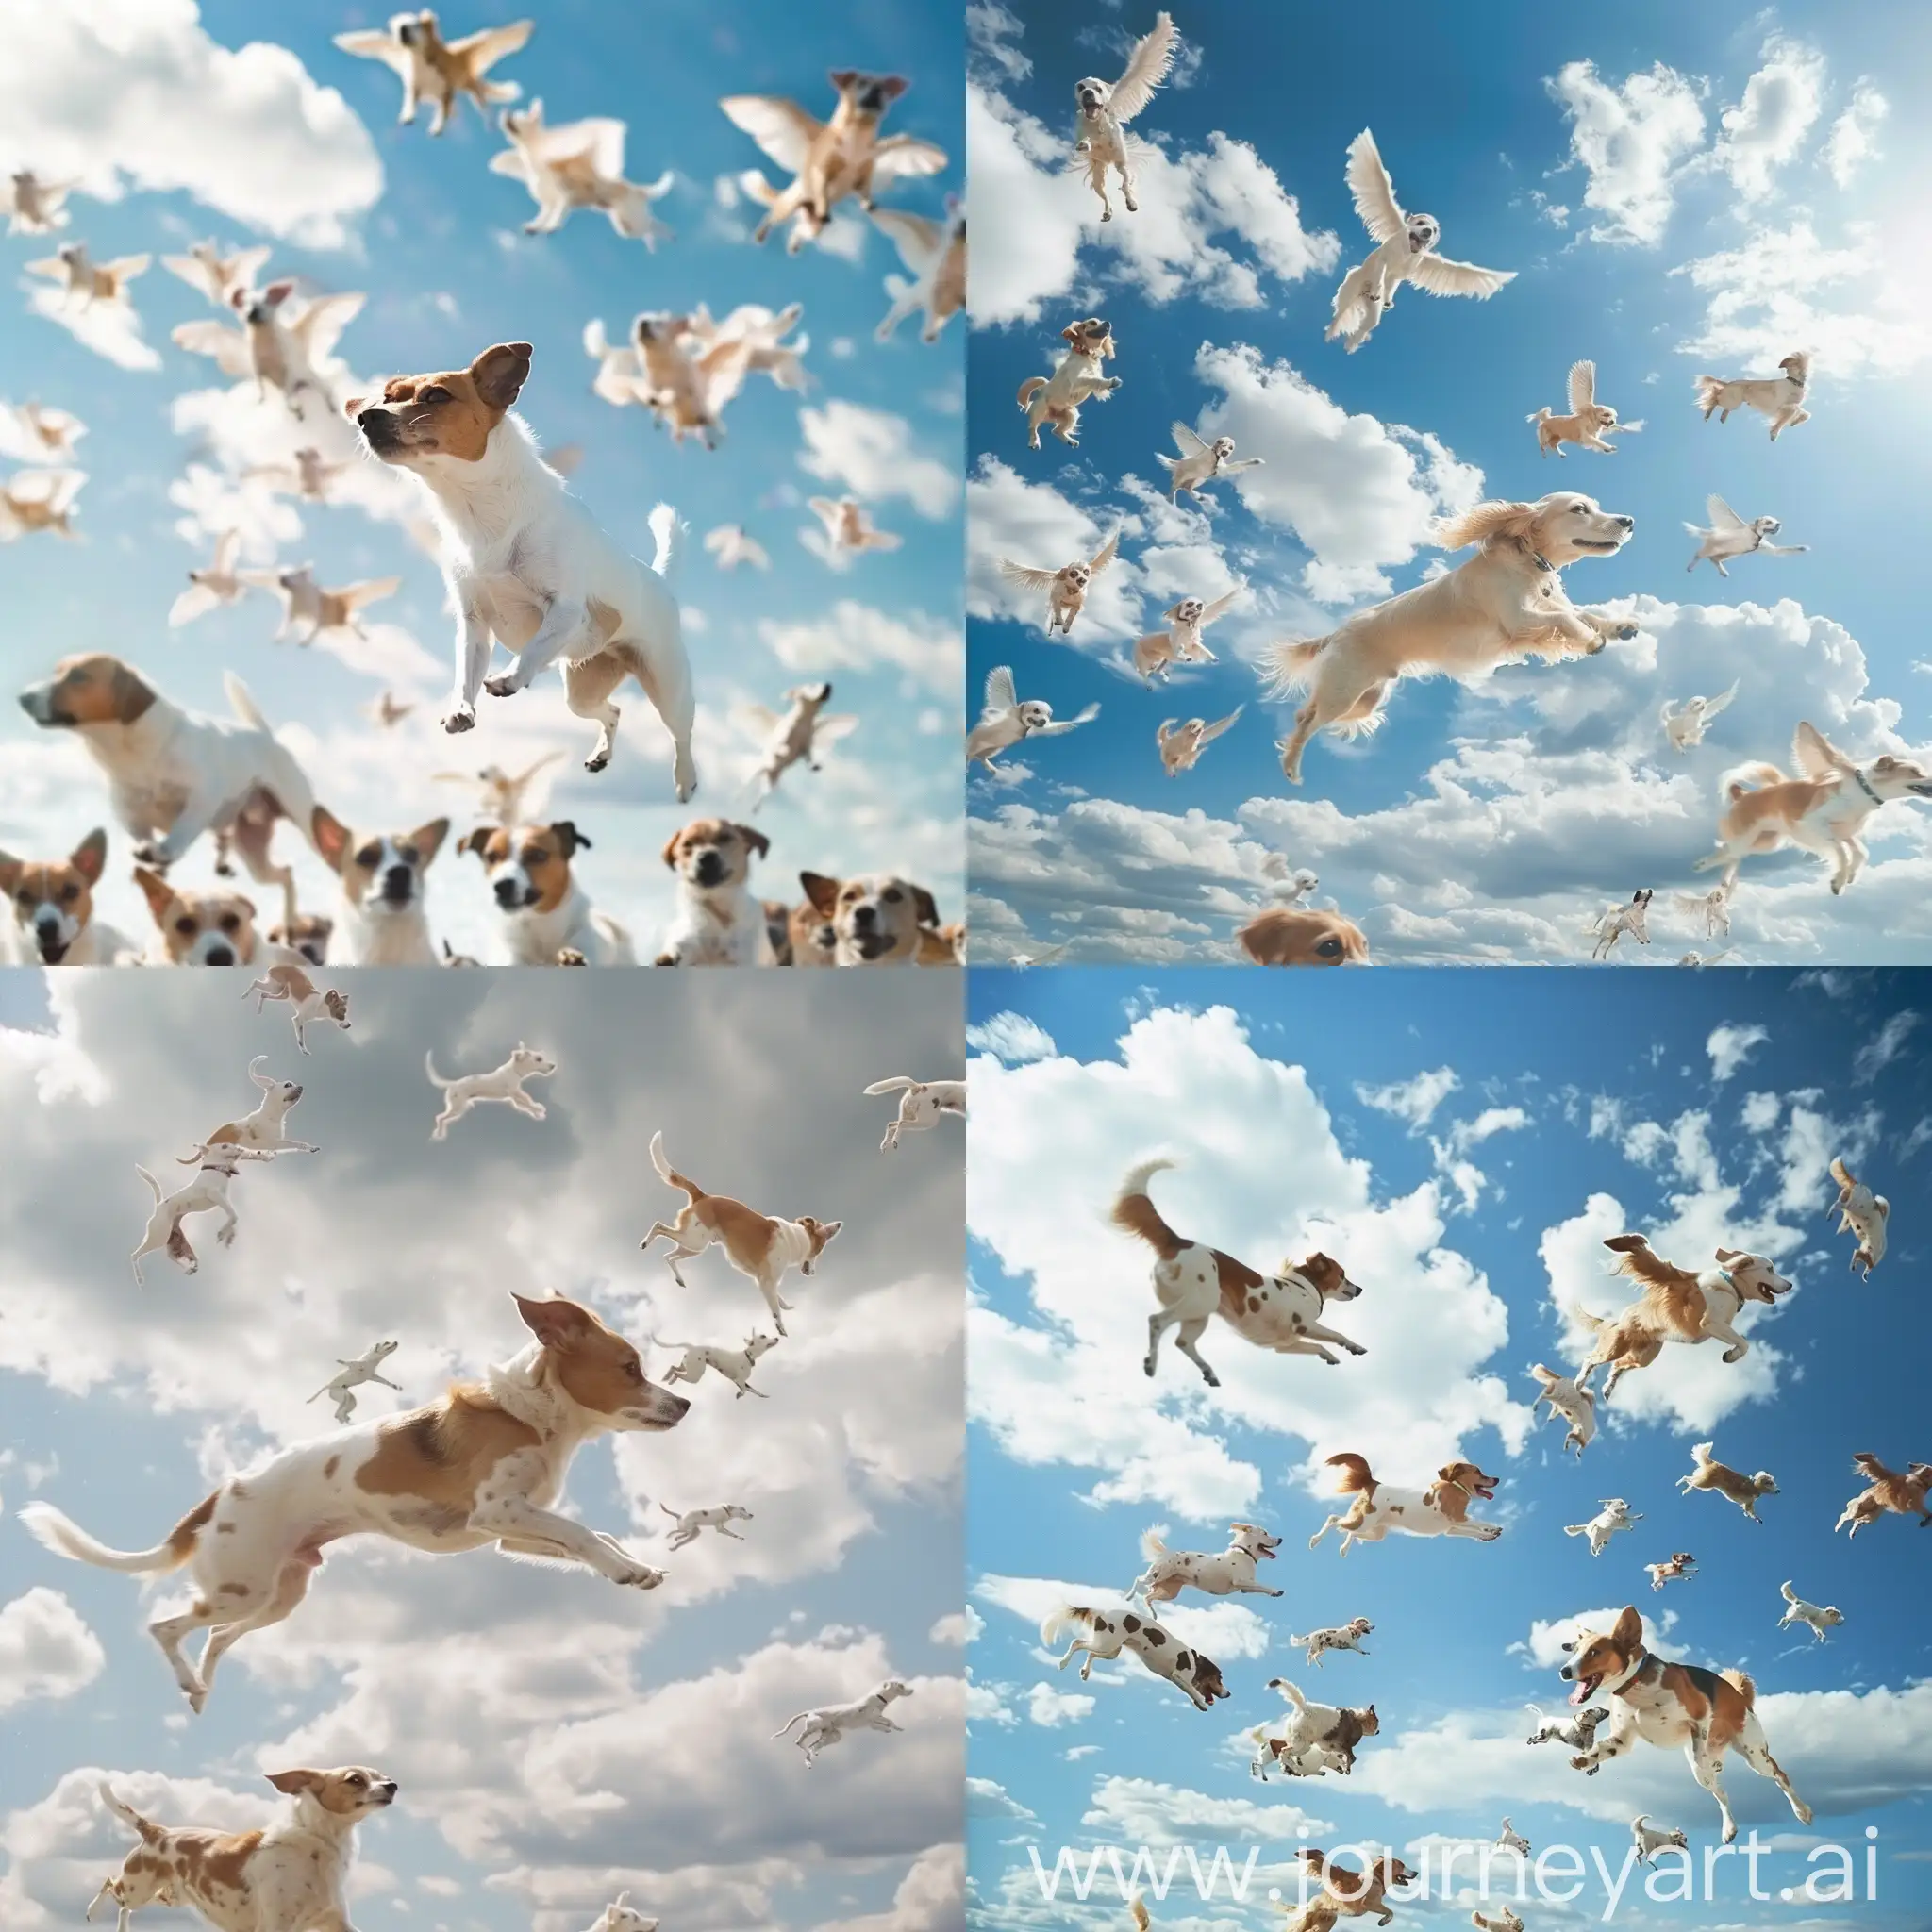 Whimsical-Sky-Full-of-Flying-Dogs